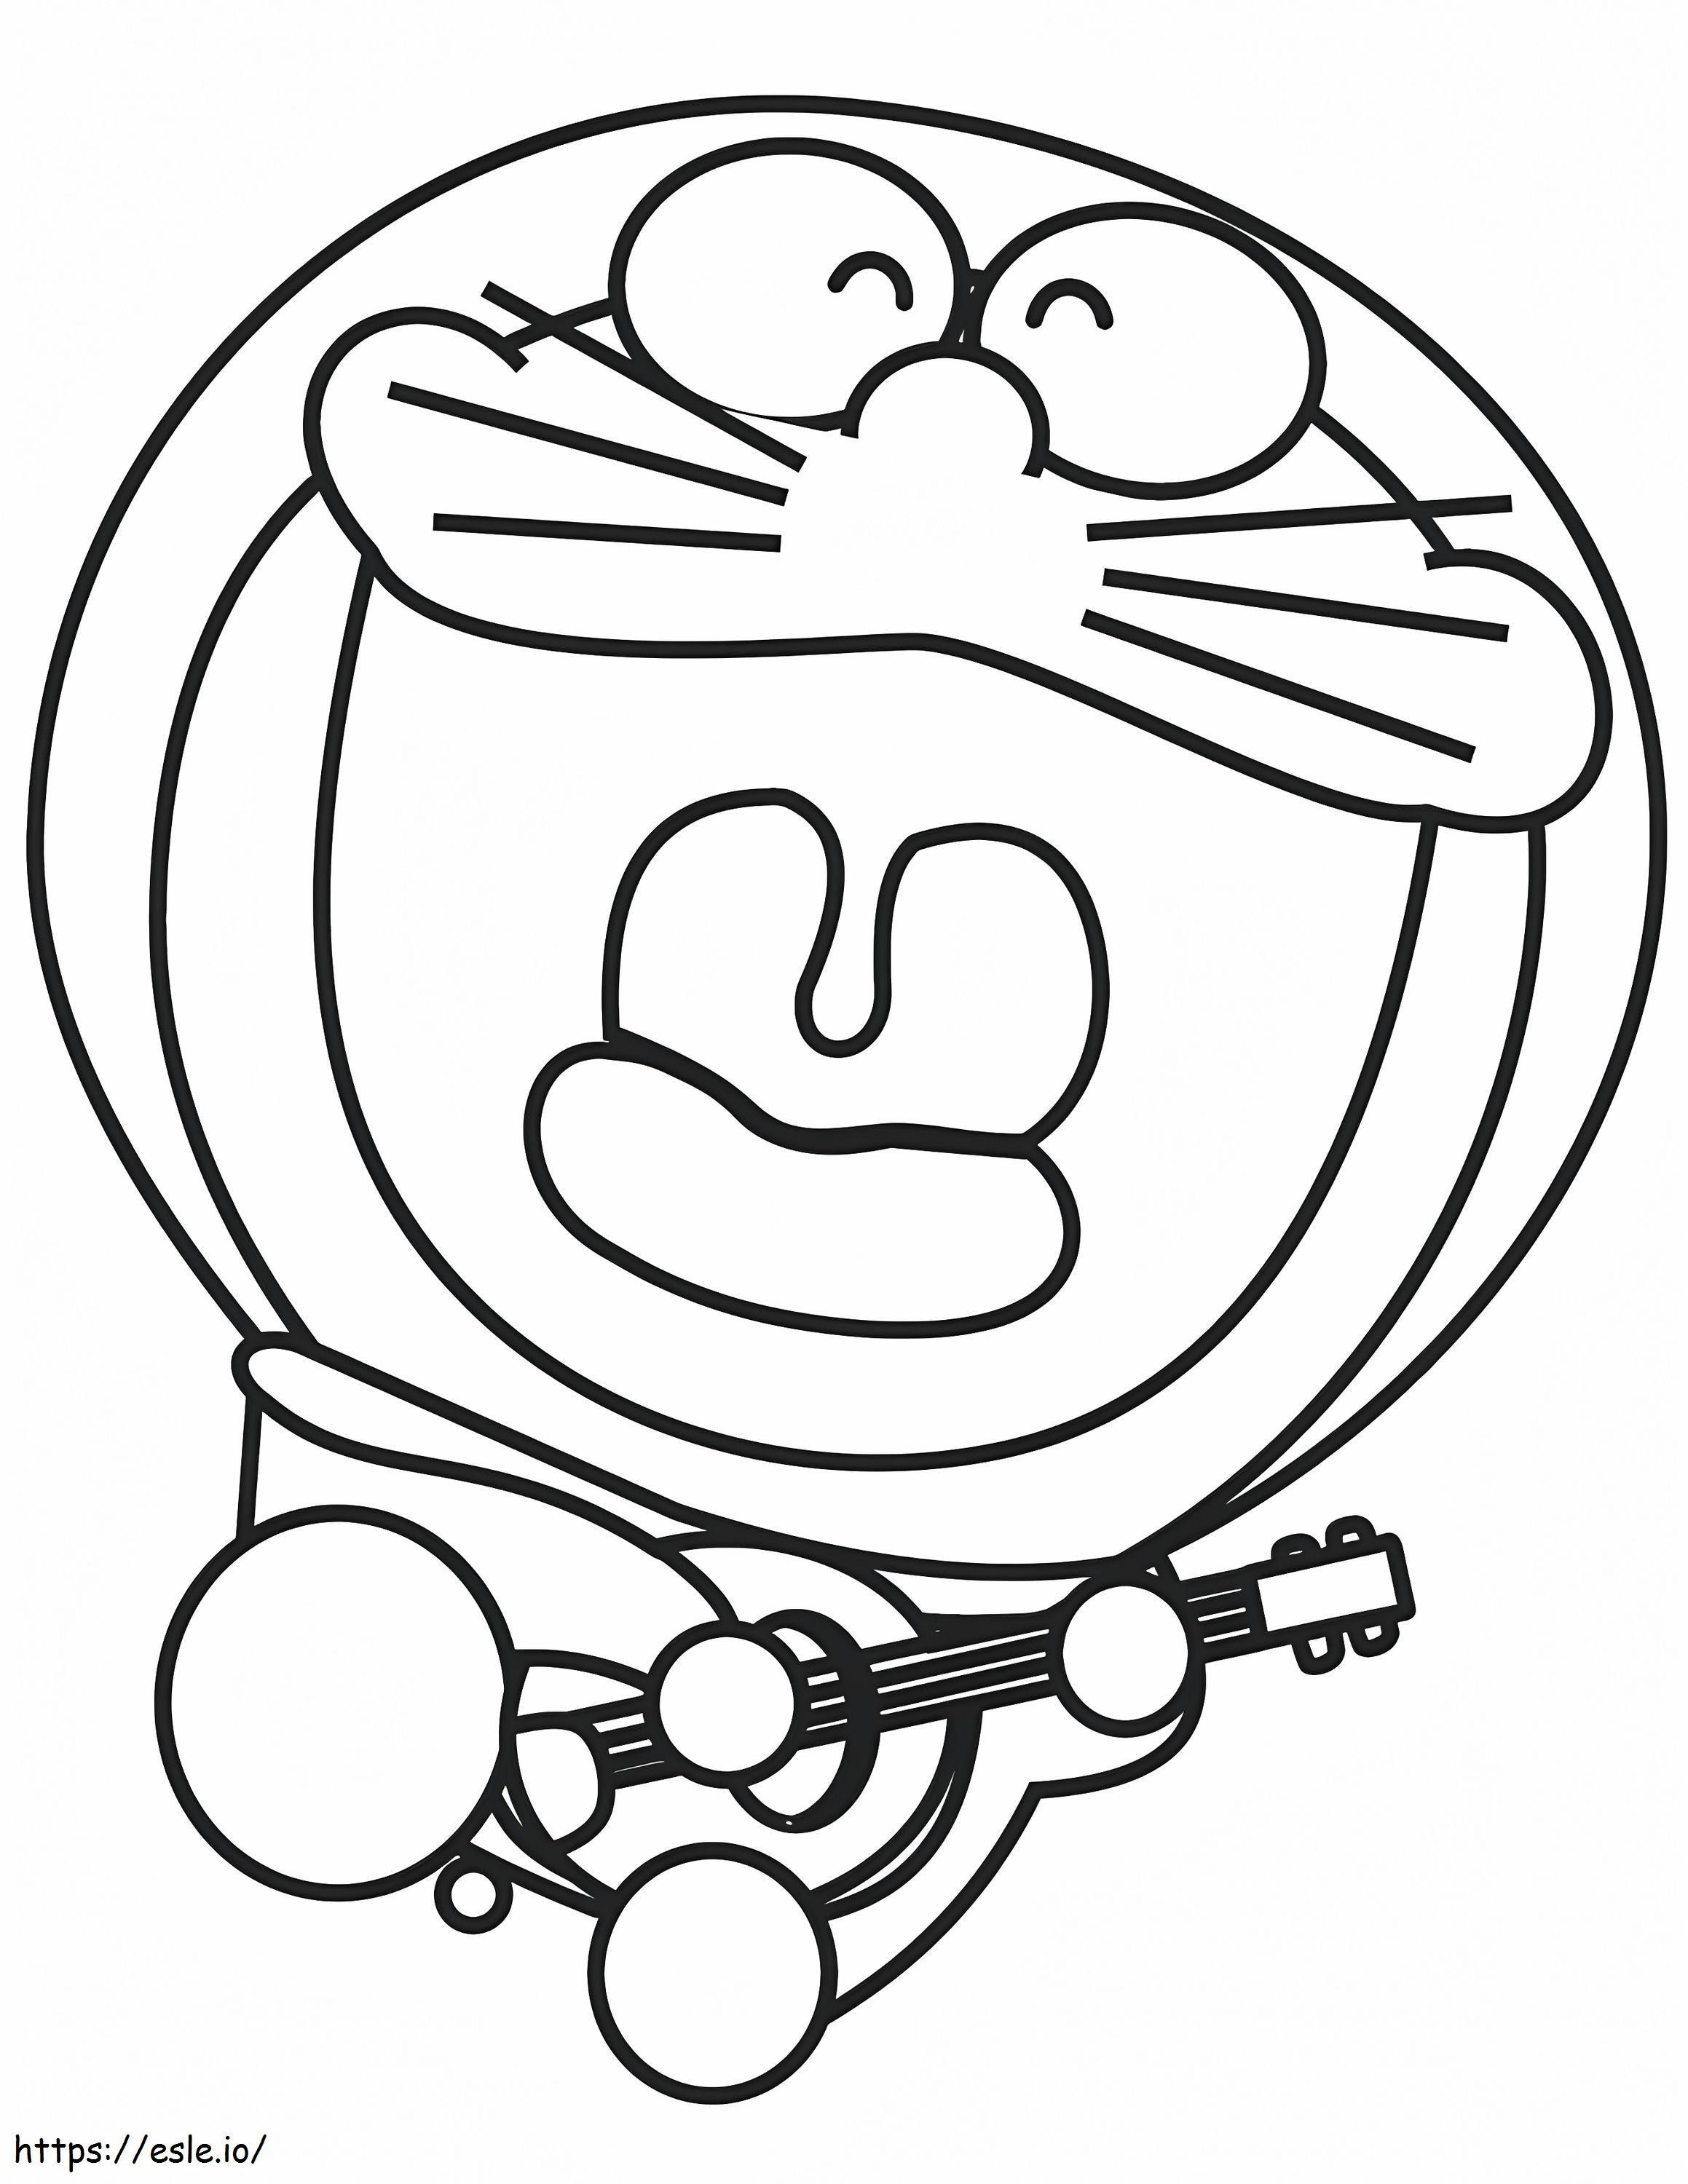 Coloriage 1531276686 Doraemon jouant de la guitare A4 à imprimer dessin